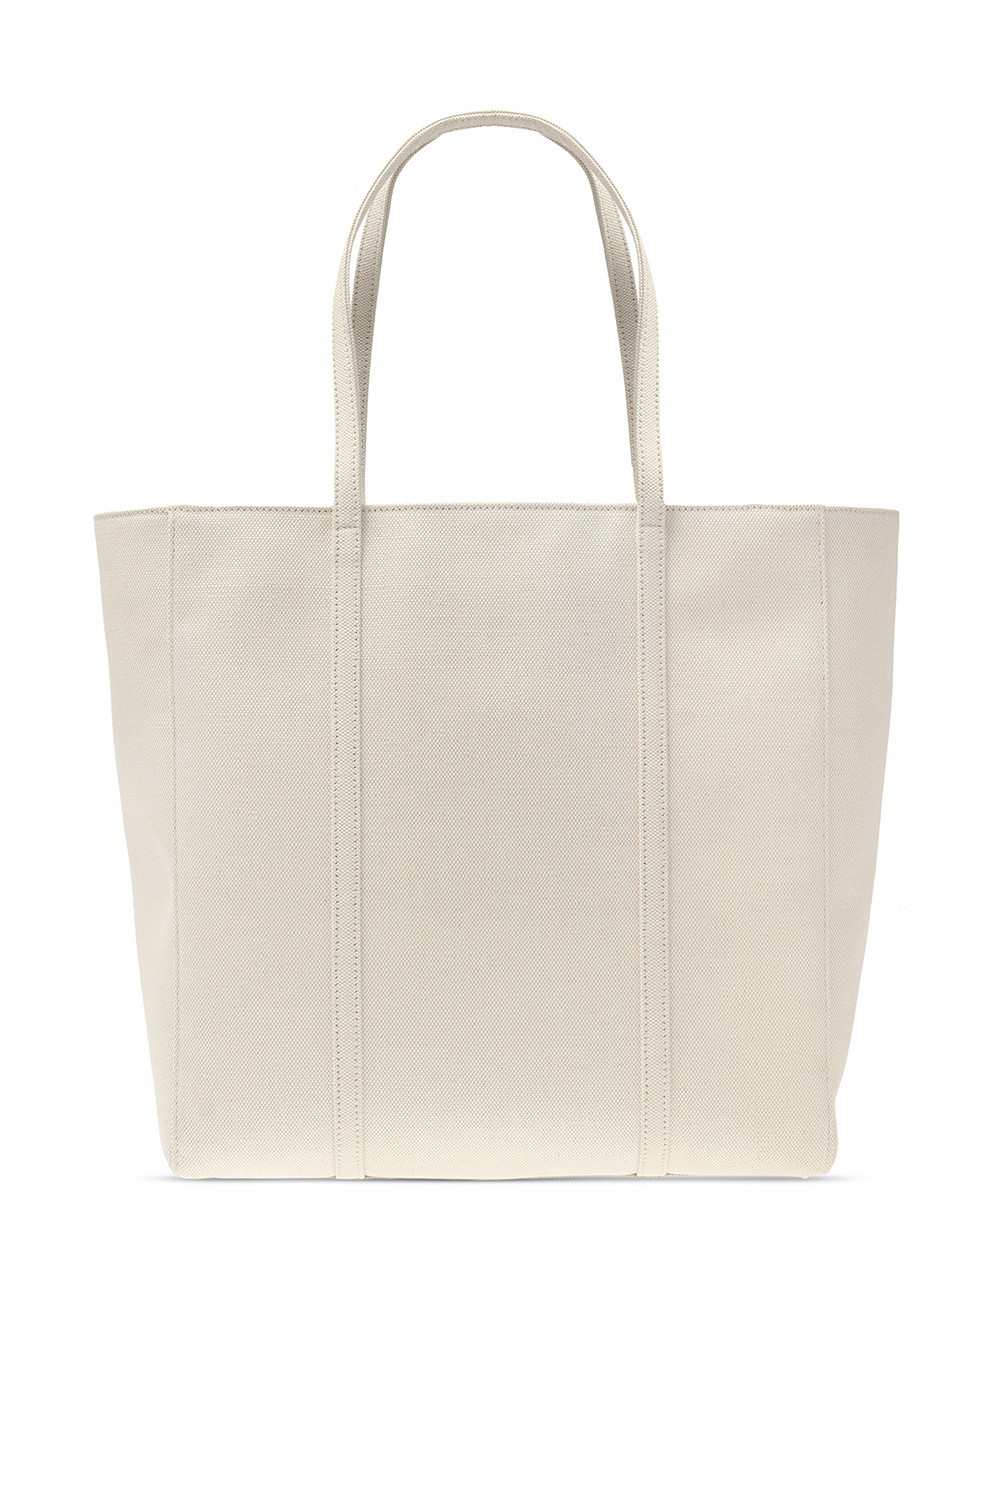 Balenciaga ‘Everyday’ shopper bag